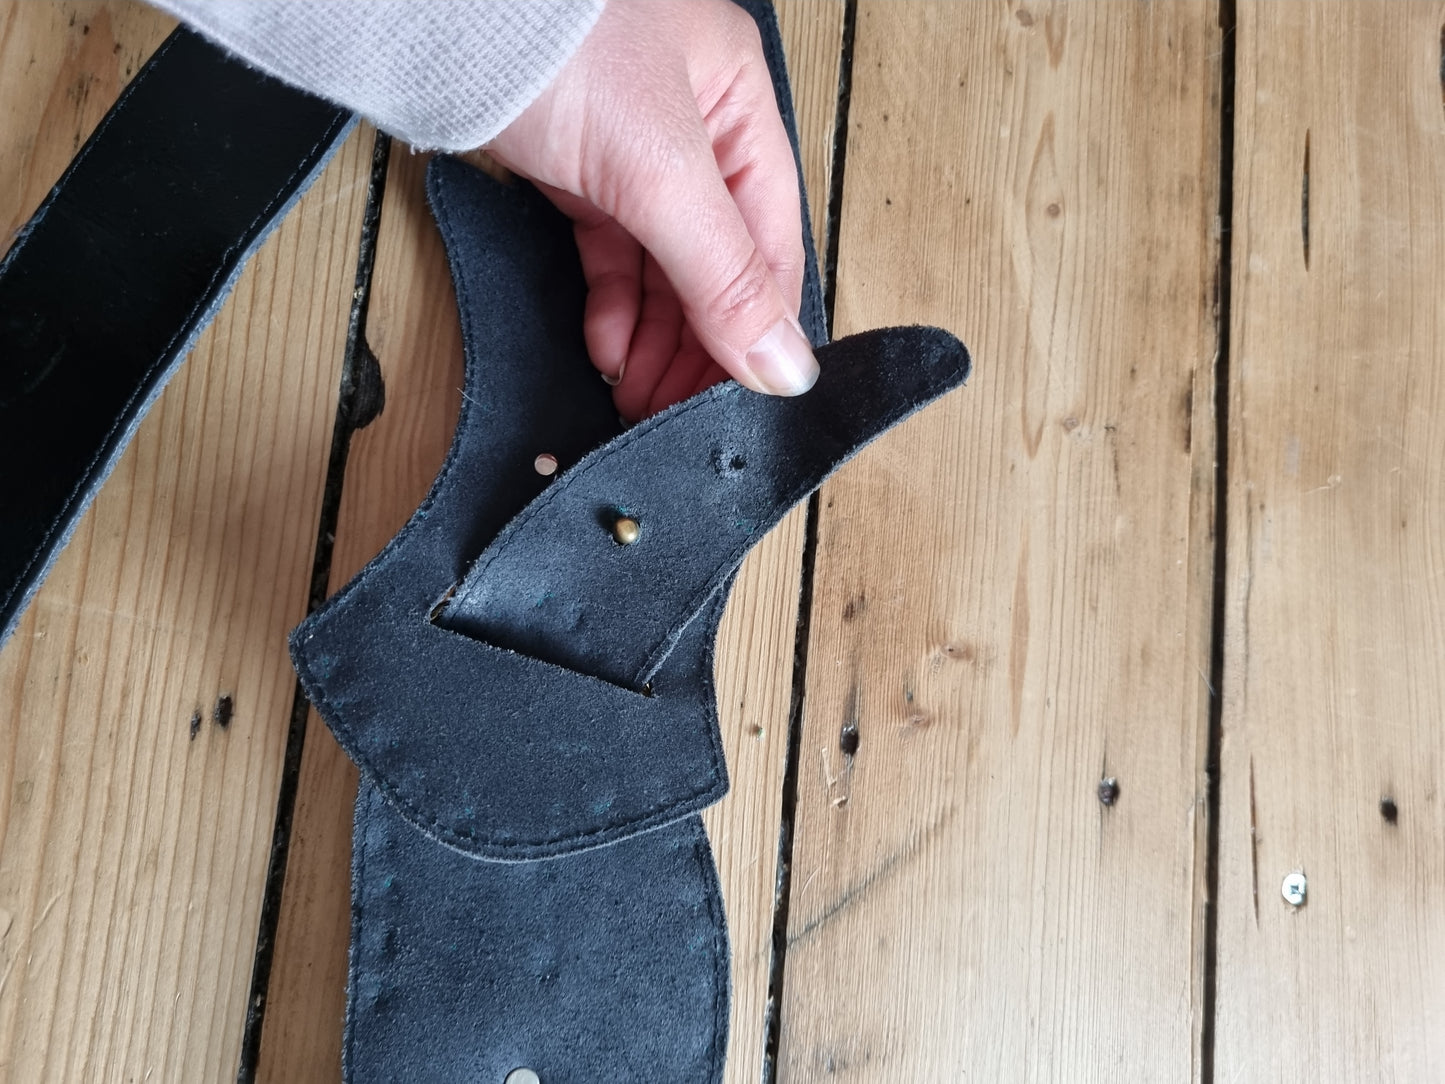 Vintage black bird waist leather belt